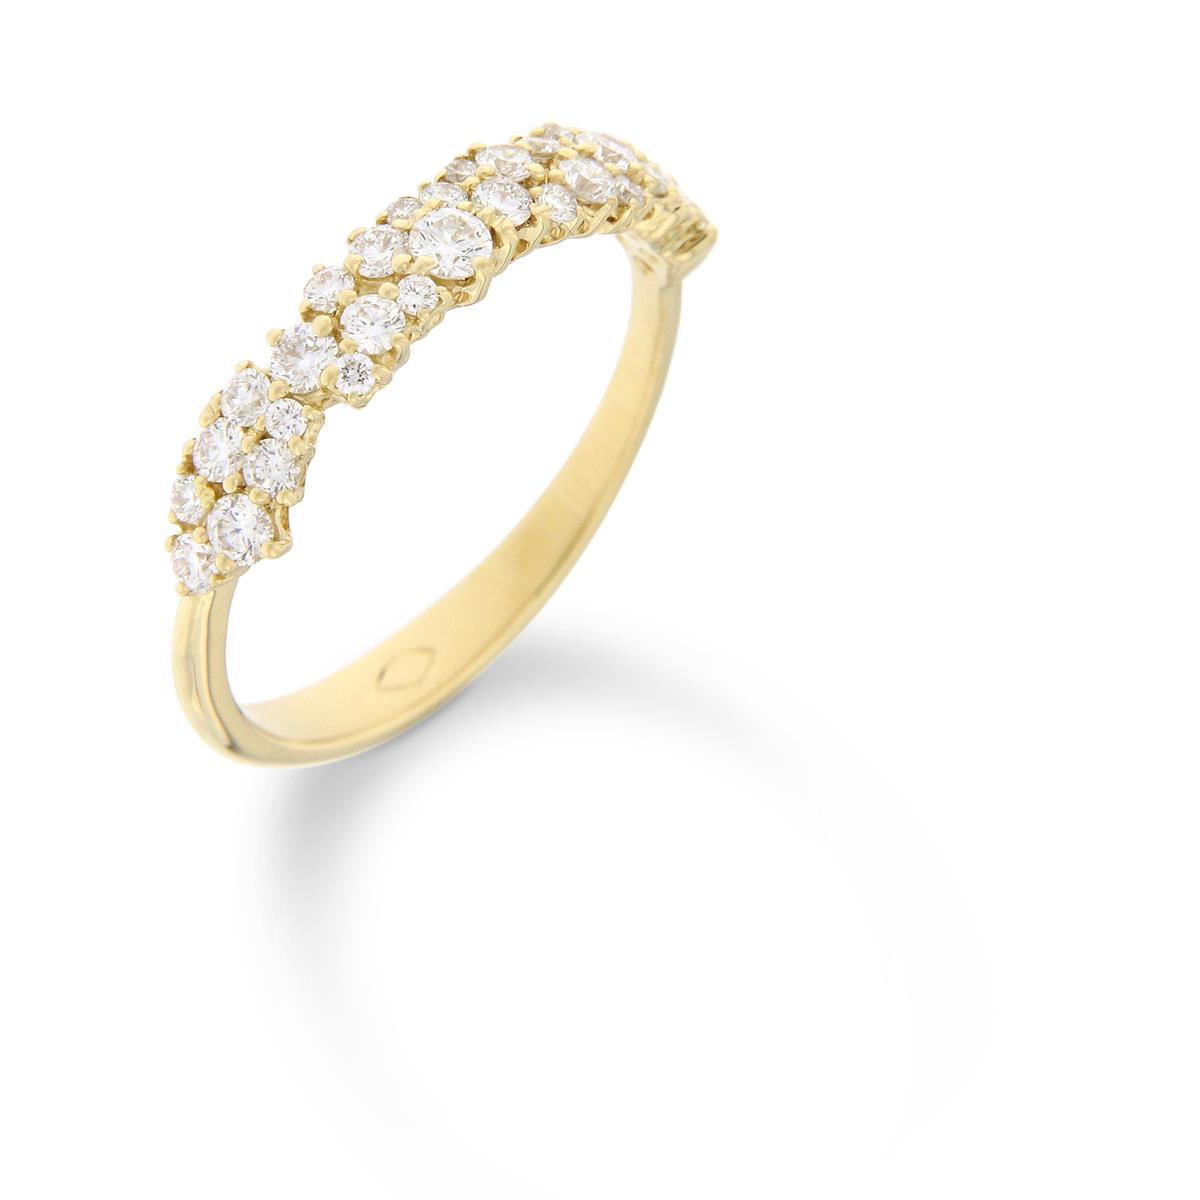 Katie g. Jewellery - 3D Designter Verlobungsring mit unregelmäßig gefassten Brillanten verlaufen über den Ring verteilt